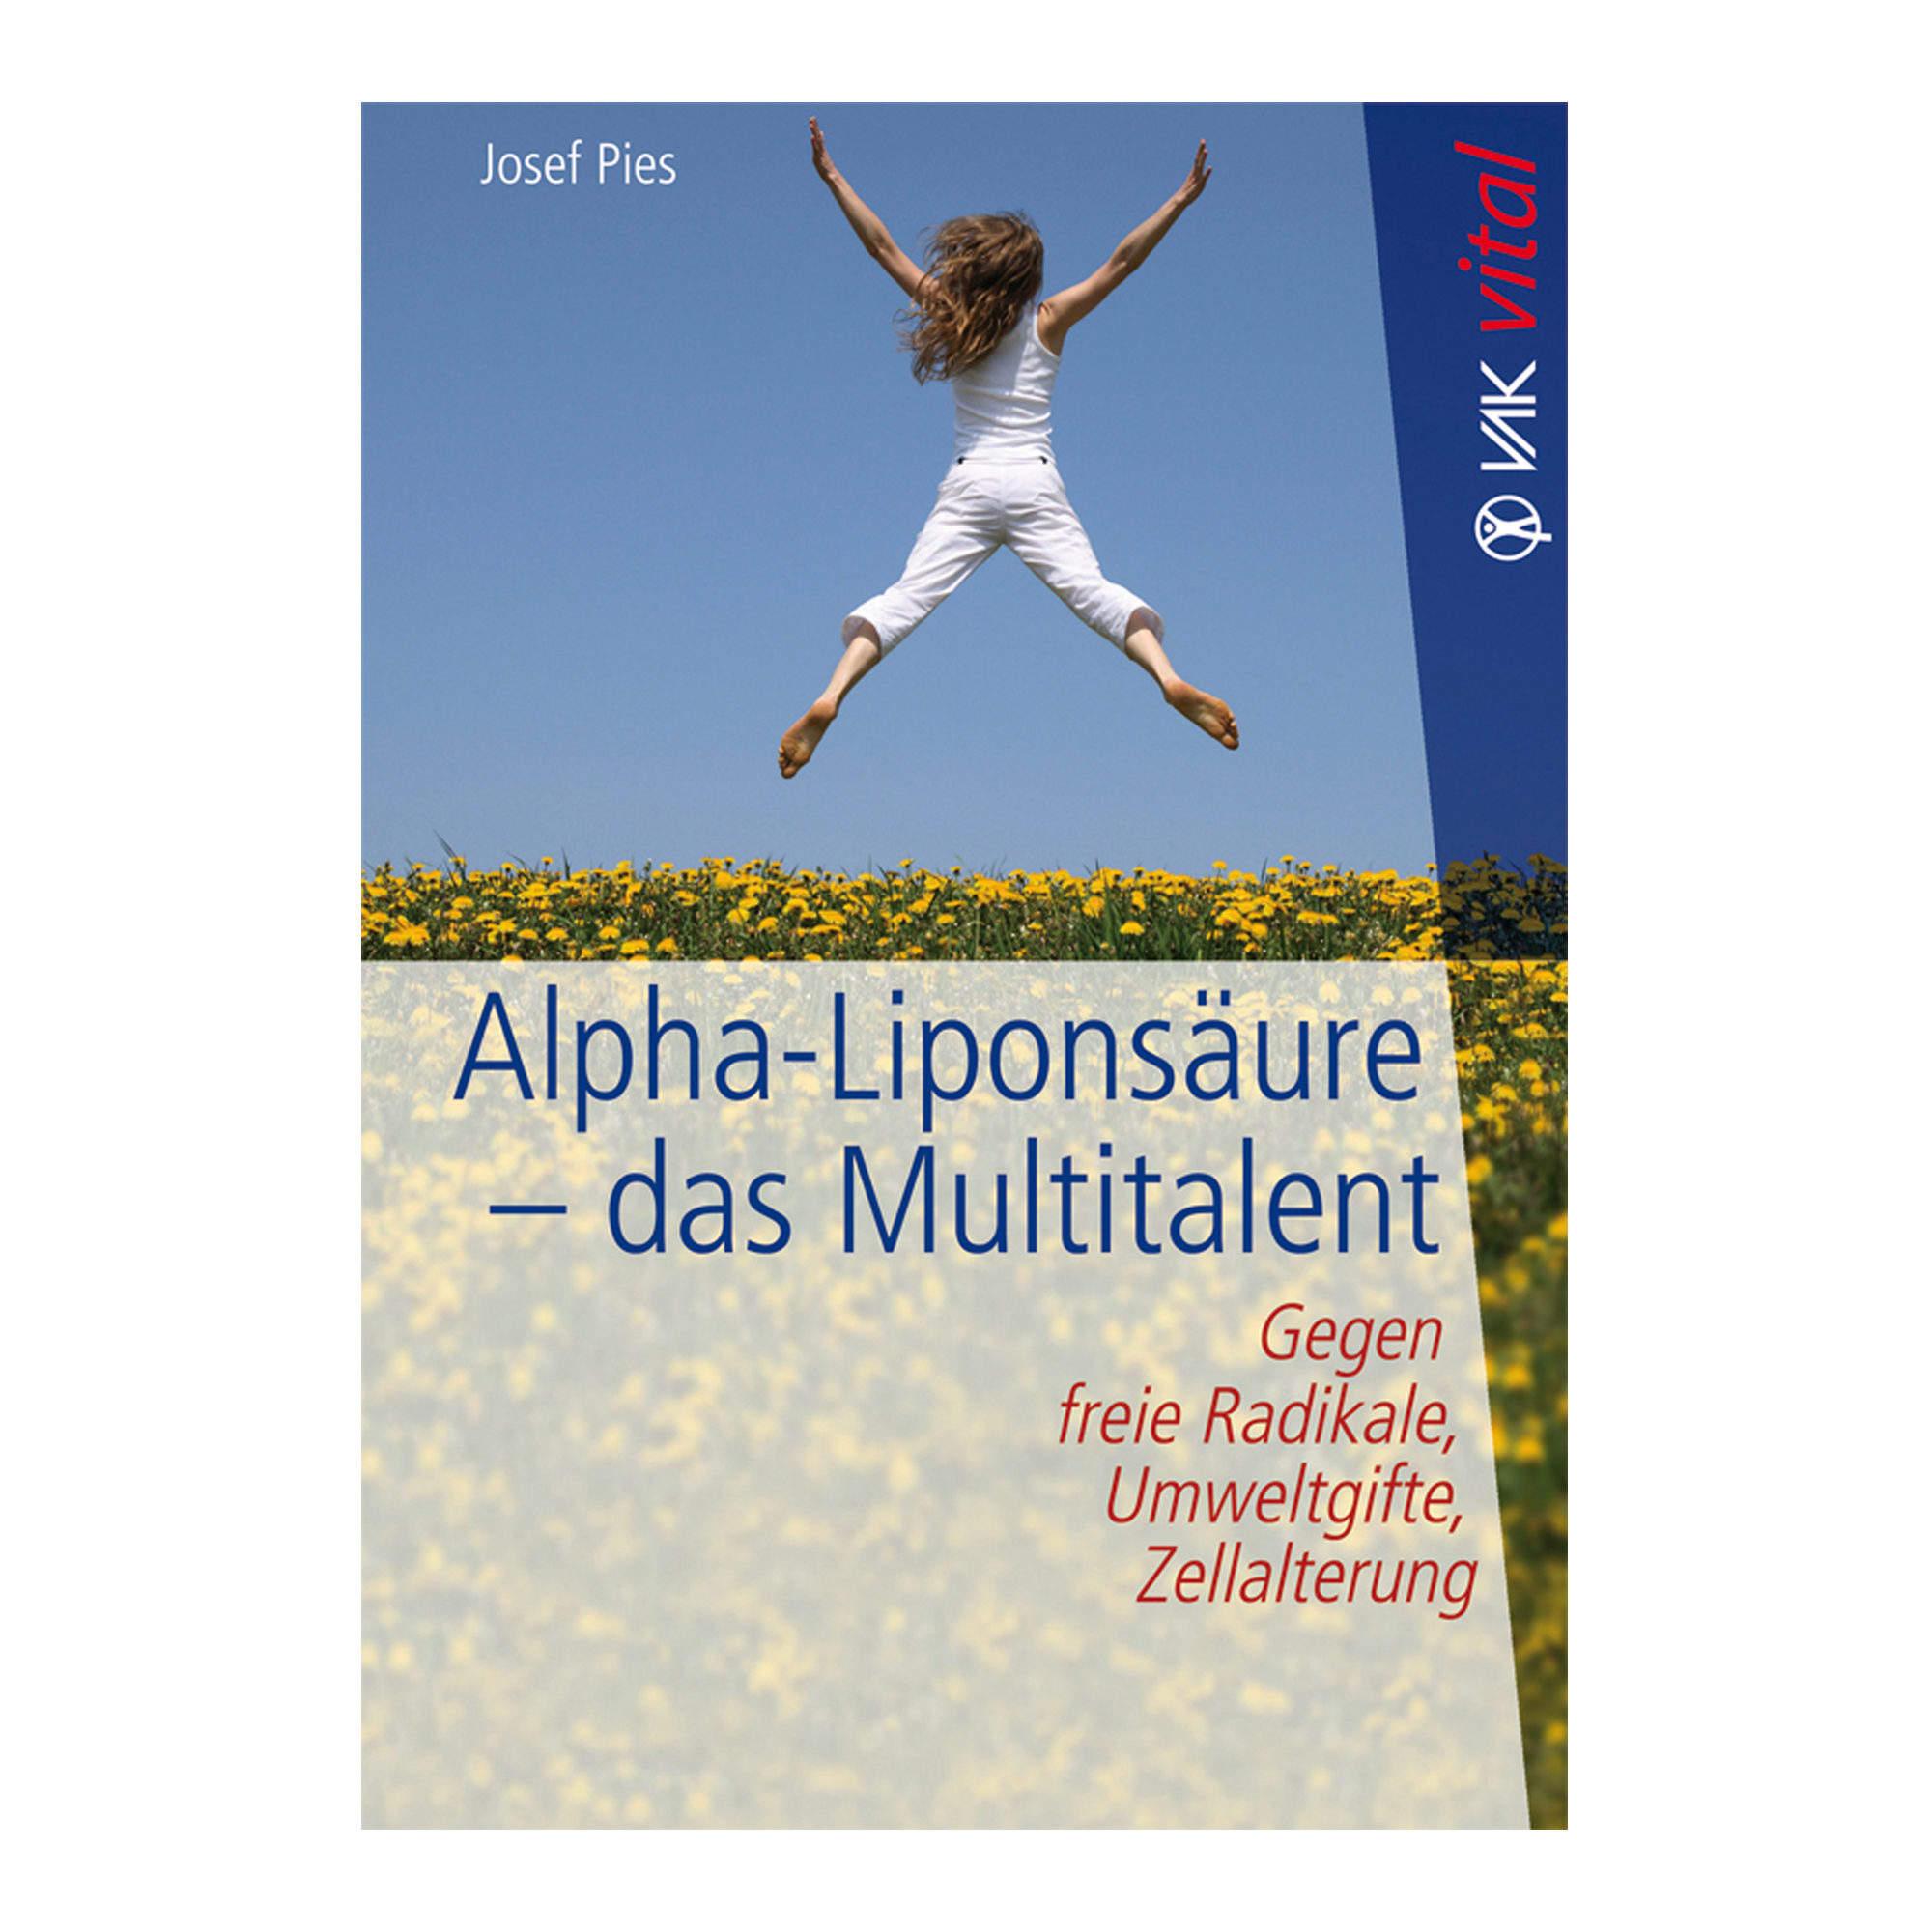 Buch: Alpha-Liponsäure – das Multitalent (Josef Pies)